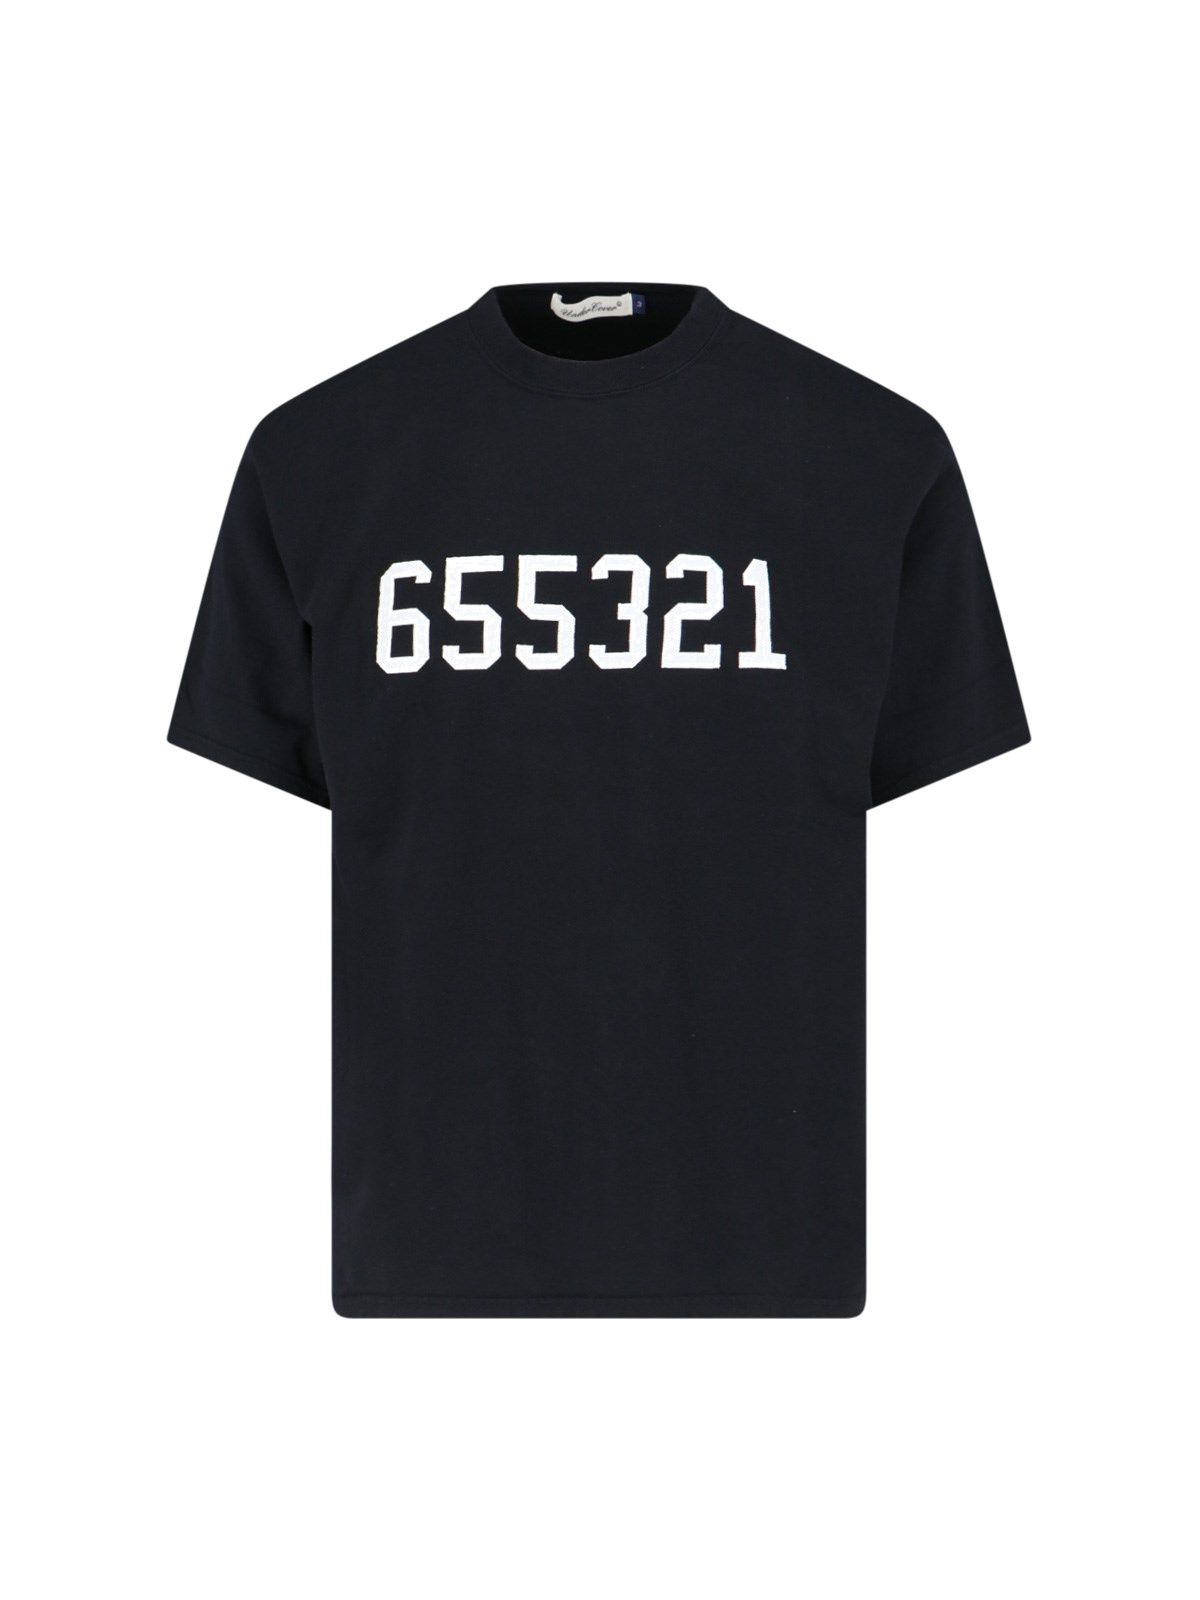 T-shirt "655321"